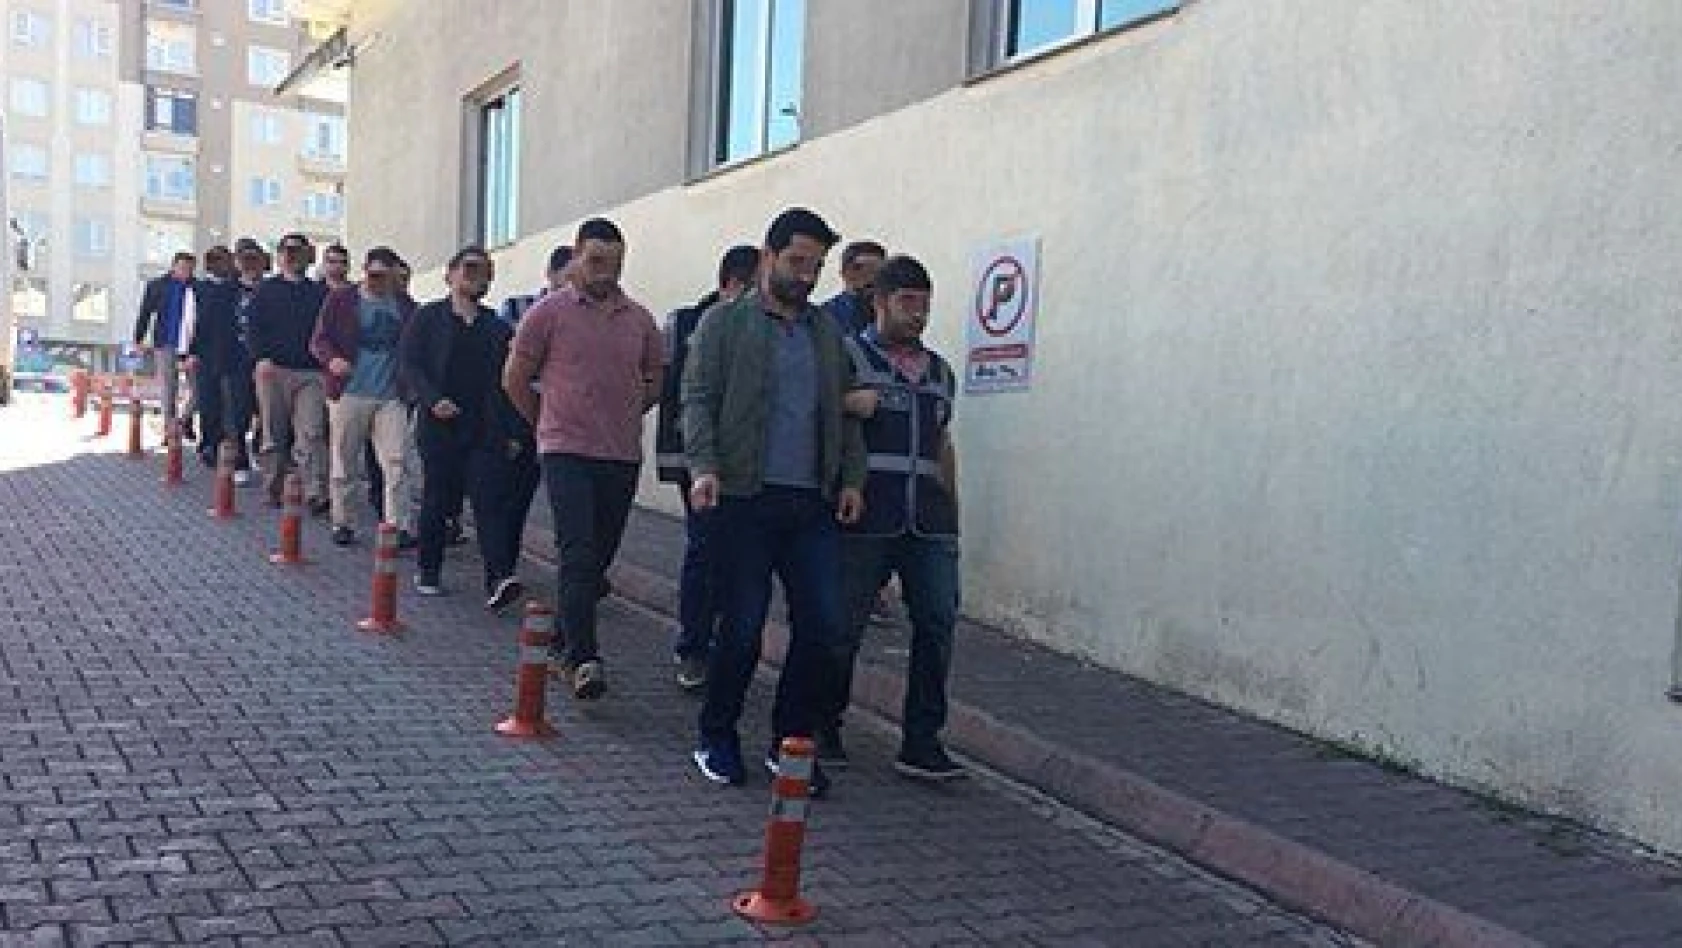 FETÖ'nün mahrem yapılanmasında gözaltına alınan 8 asker adliyeye sevk edildi